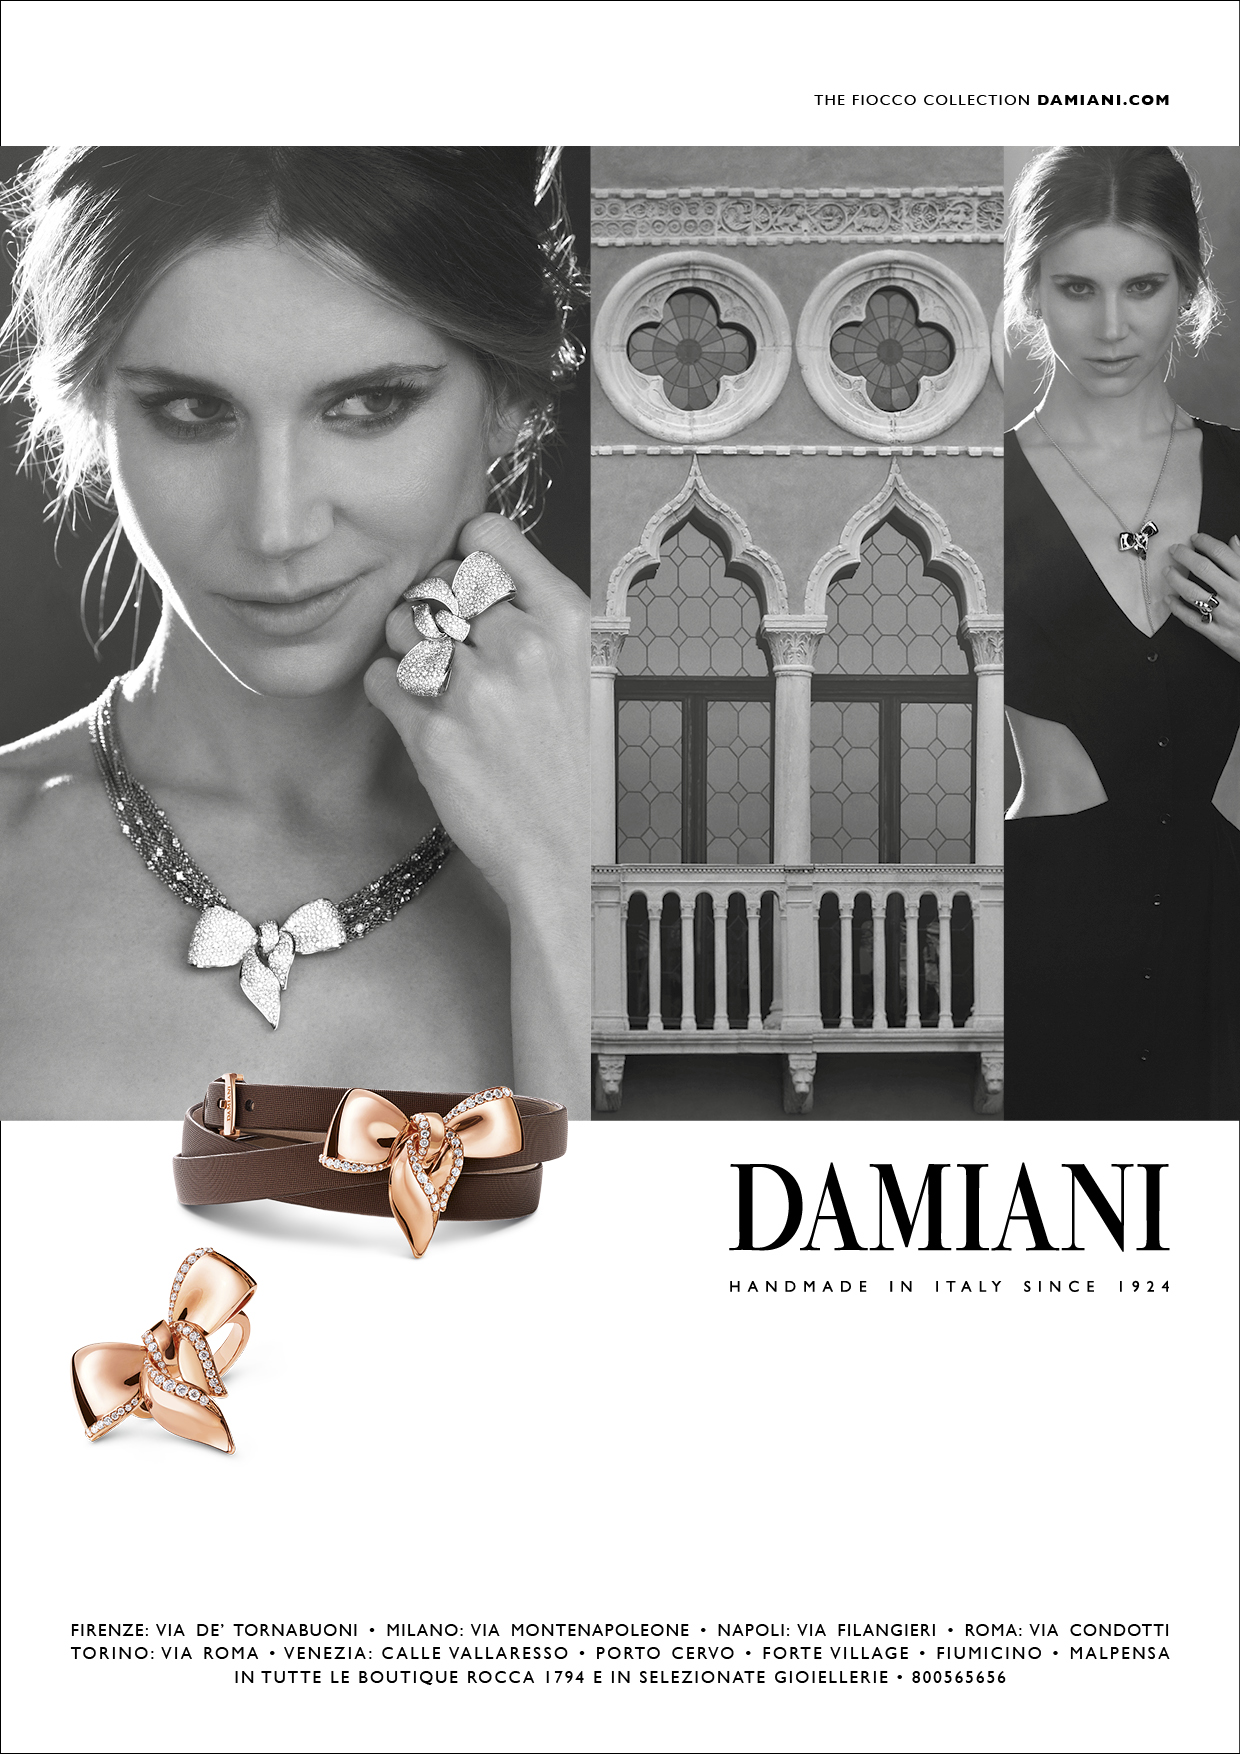 Damiani campagna pubblicitaria 2016: il viaggio in Italia con Nicoletta Romanoff